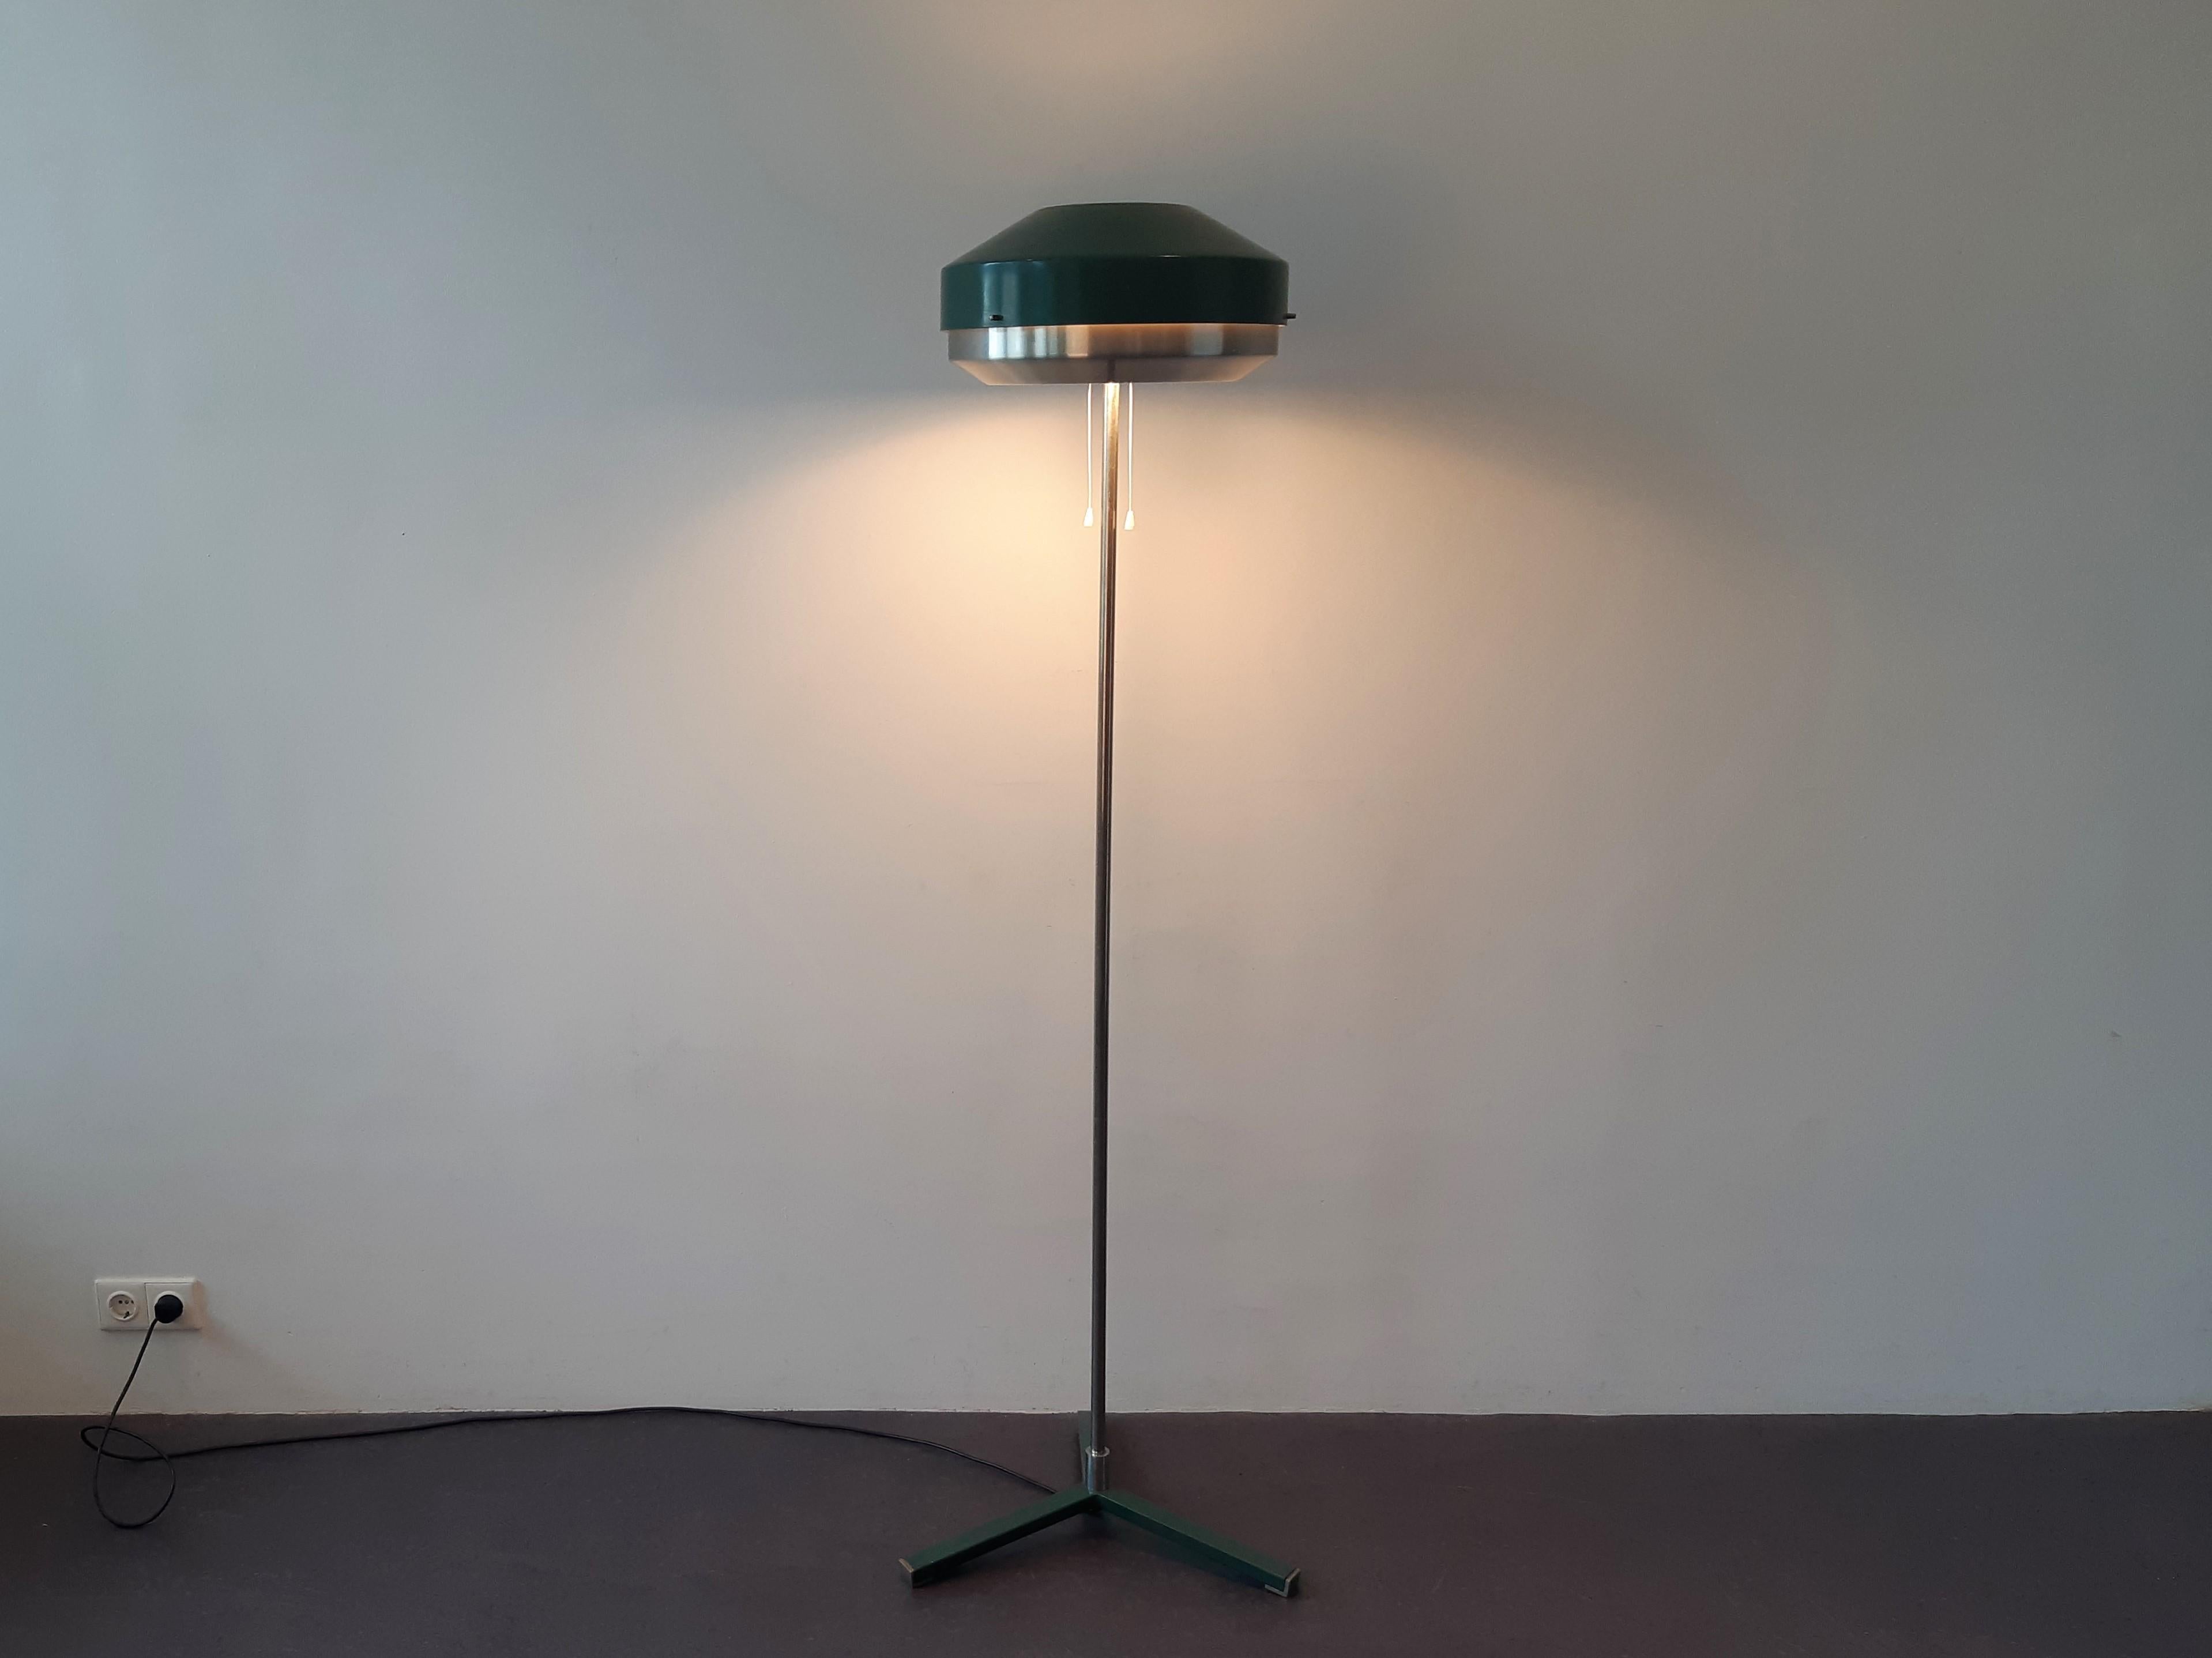 Green Metal Floor Lamp by Willem Hagoort for Hagoort Lamps, the Netherlands 1960 In Good Condition For Sale In Steenwijk, NL